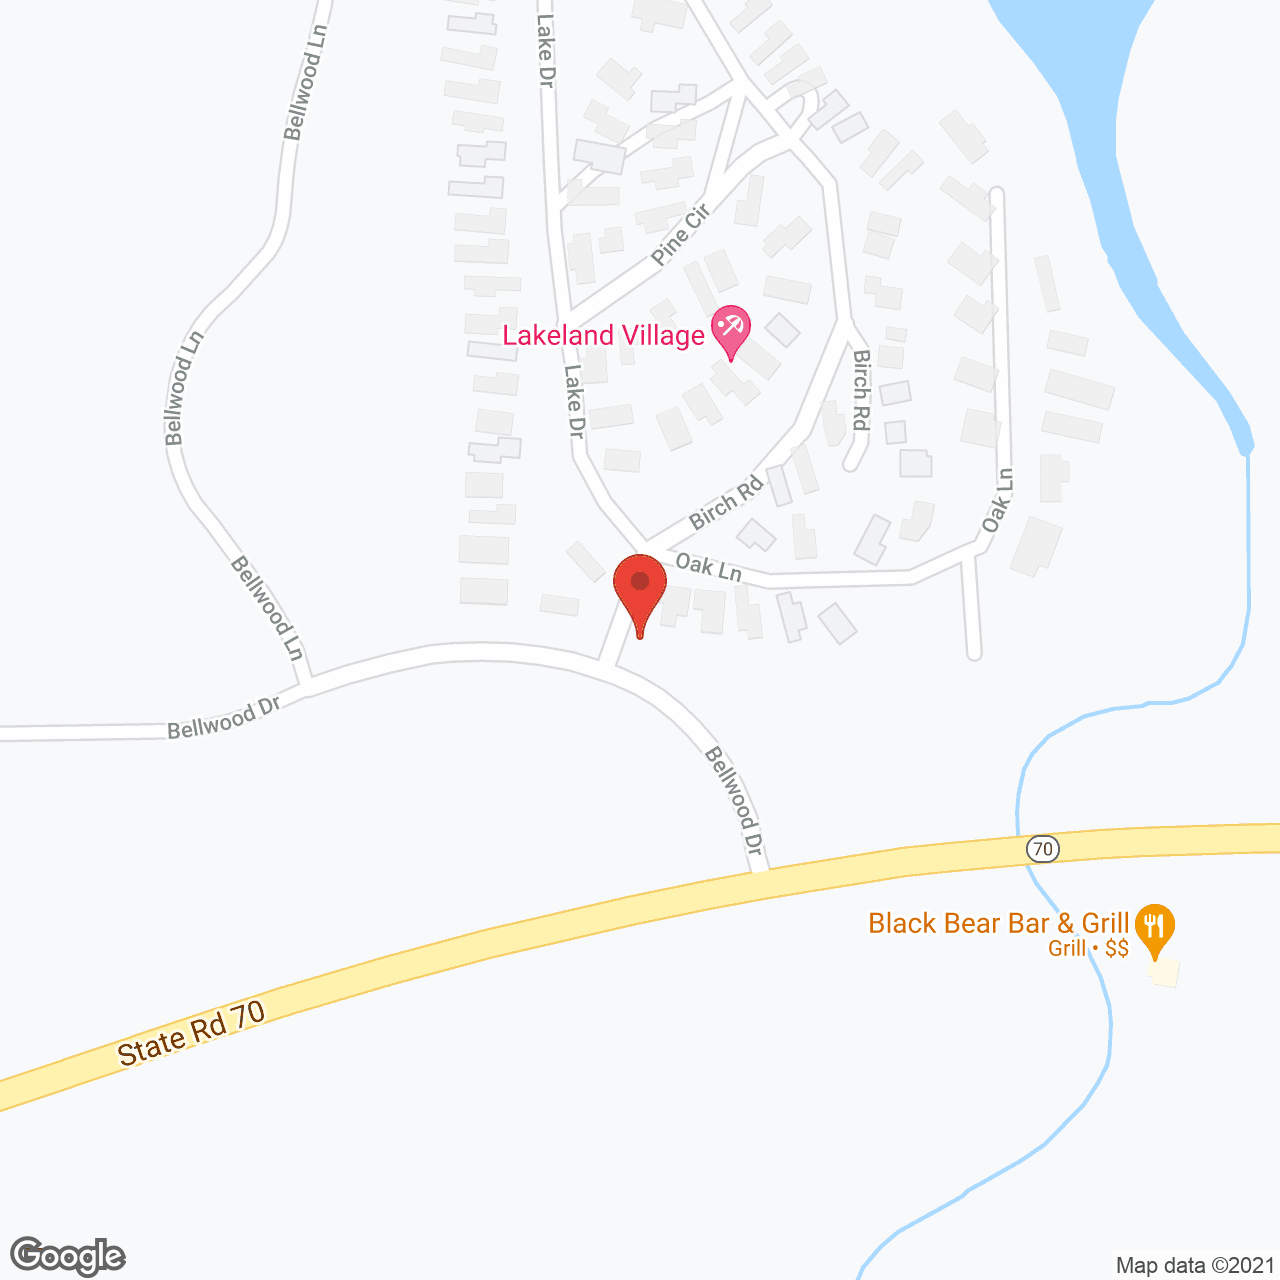 Lakeland Village in google map